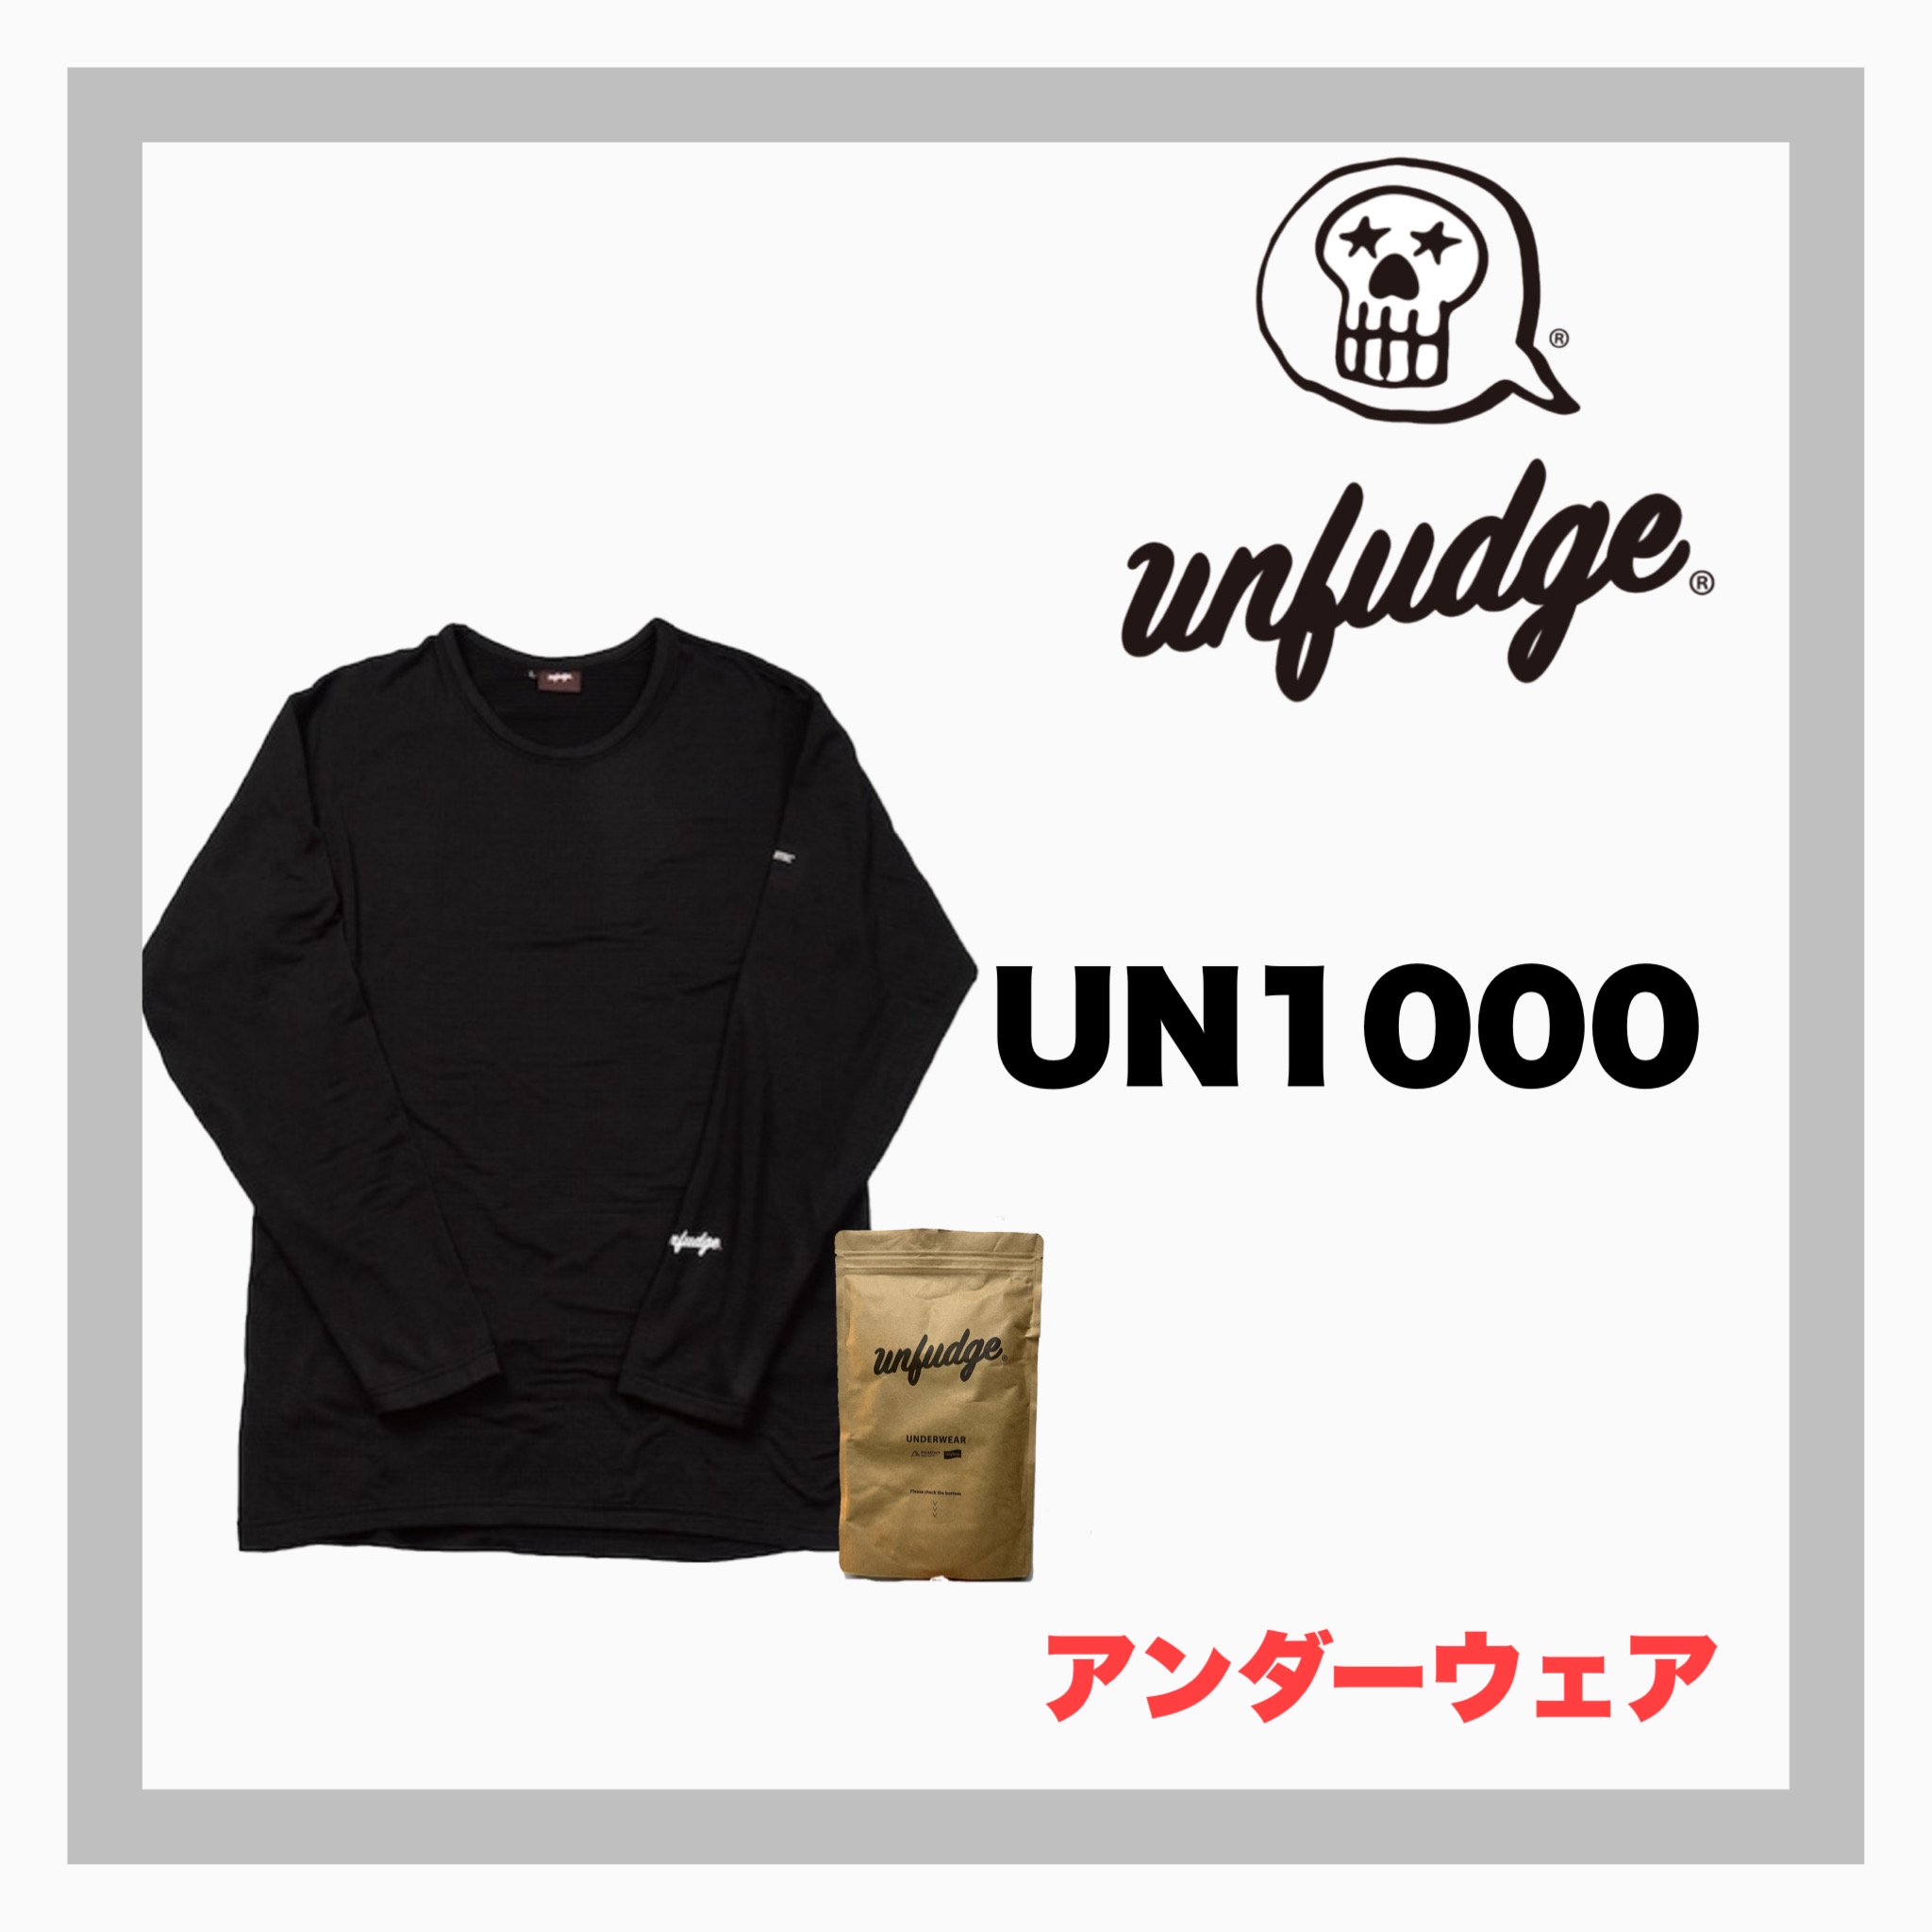 unfudge【 UN1000 Crew Neck Underwear / black】 - JOINT HOUSE